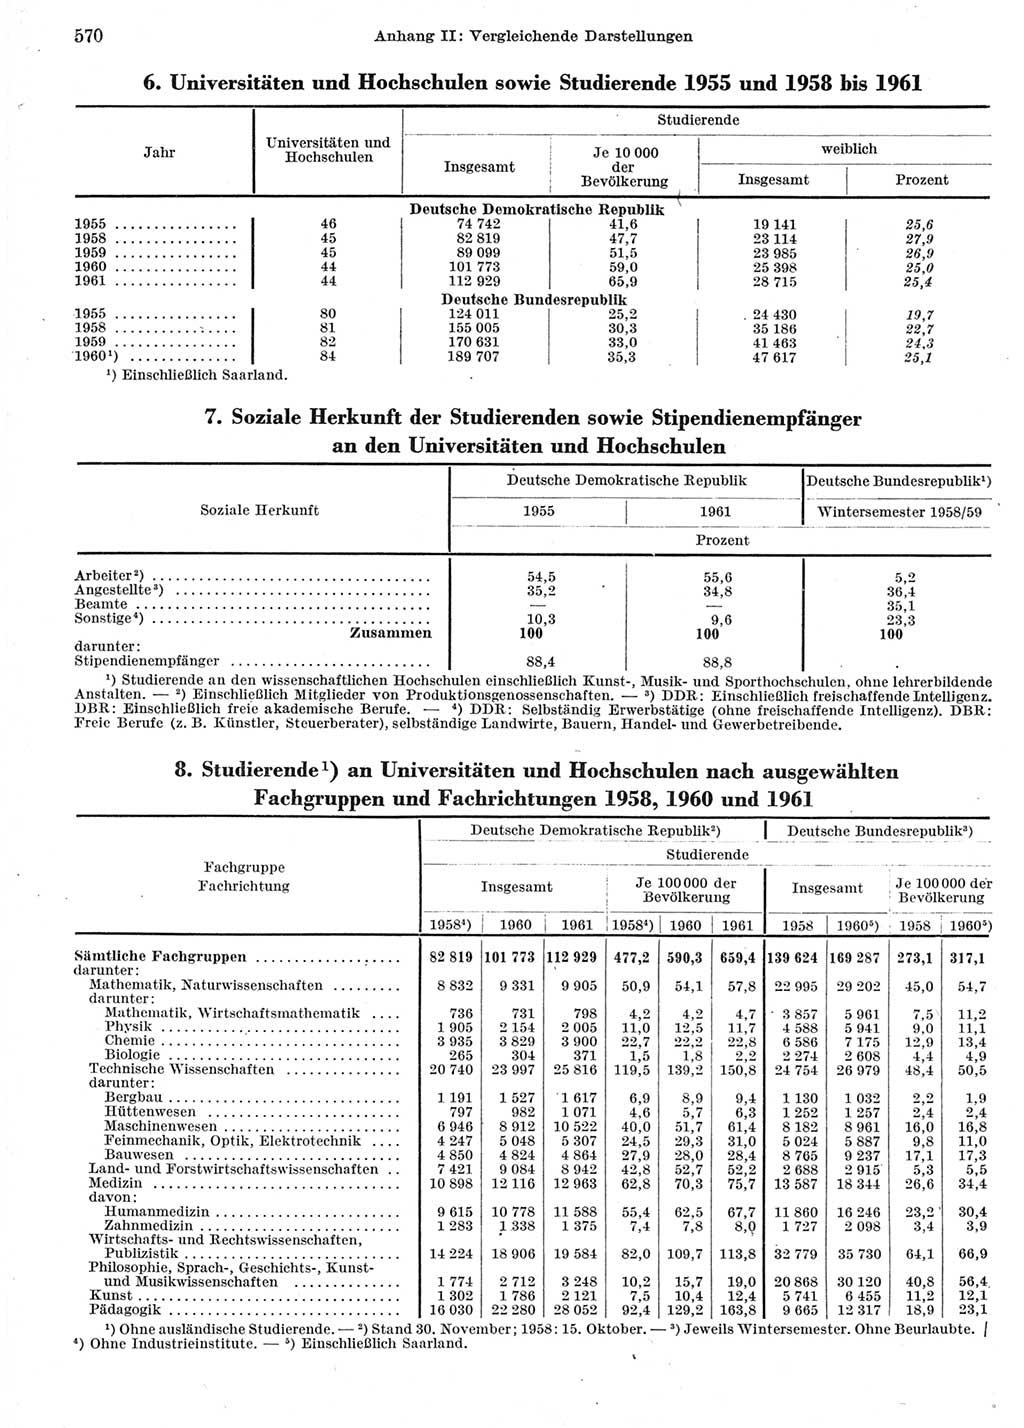 Statistisches Jahrbuch der Deutschen Demokratischen Republik (DDR) 1962, Seite 570 (Stat. Jb. DDR 1962, S. 570)